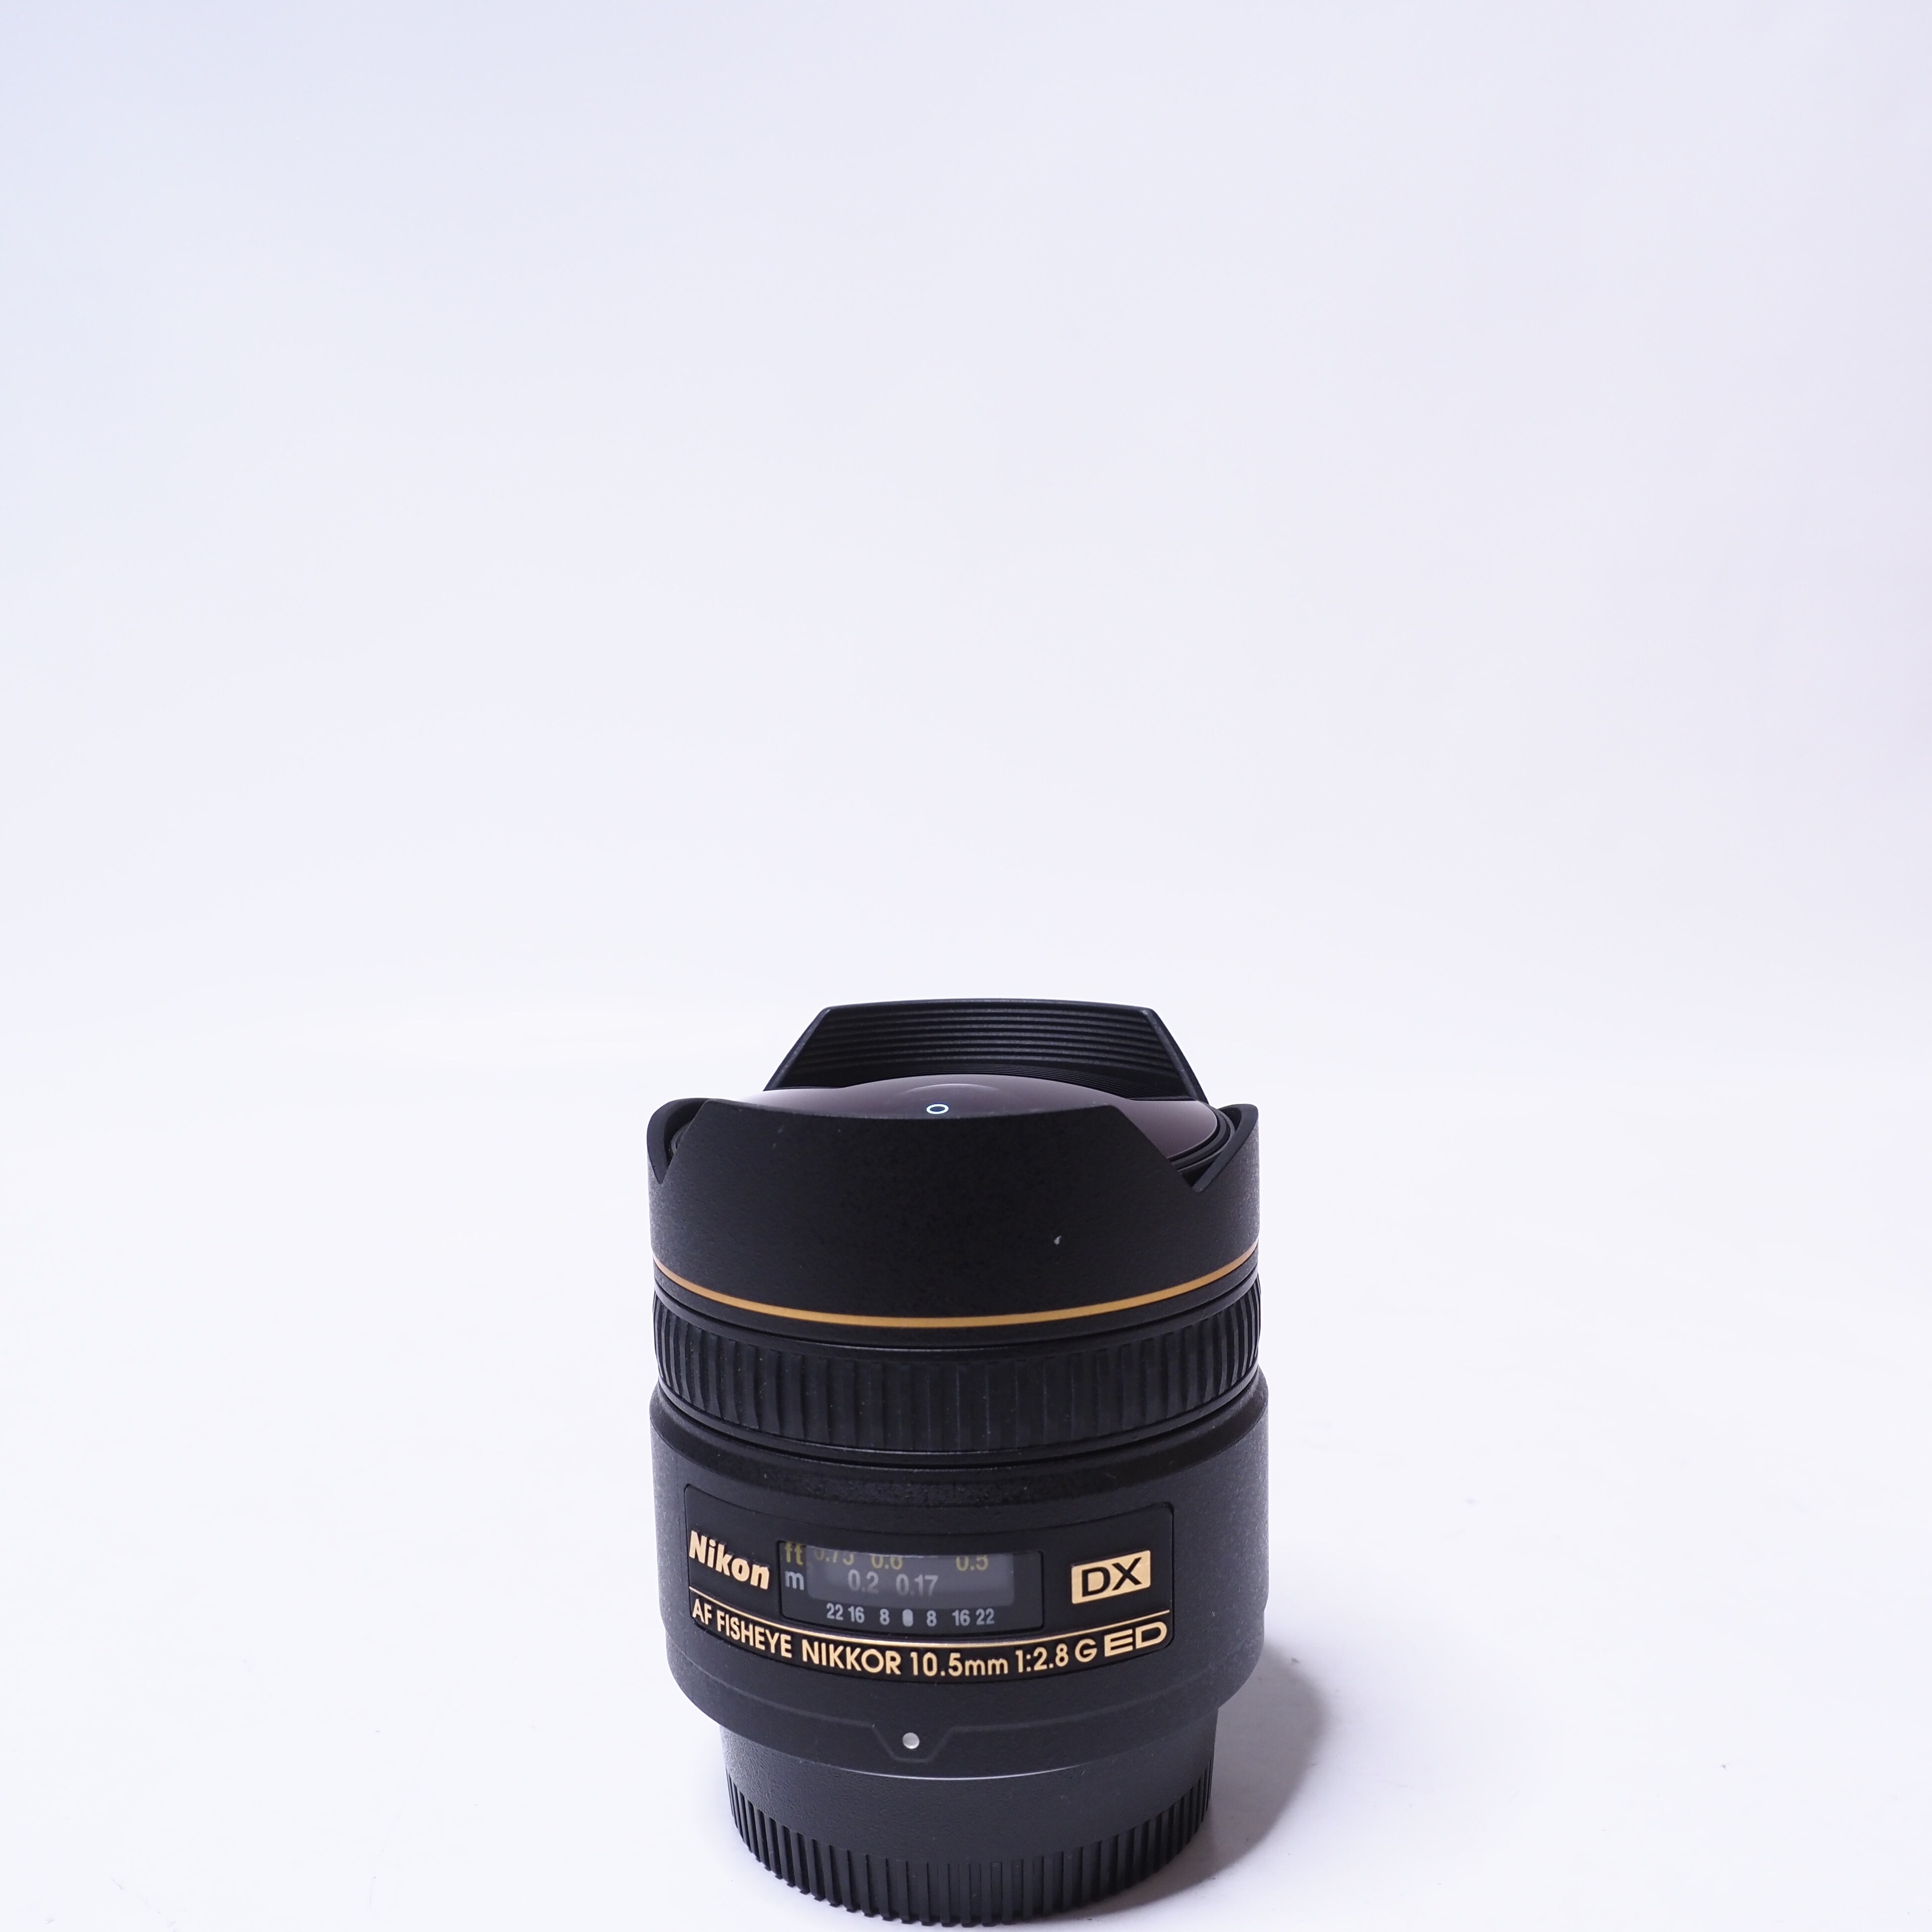 Nikon AF Fisheye Nikkor 10.5mm f/2.8 G ED DX - Begagnad